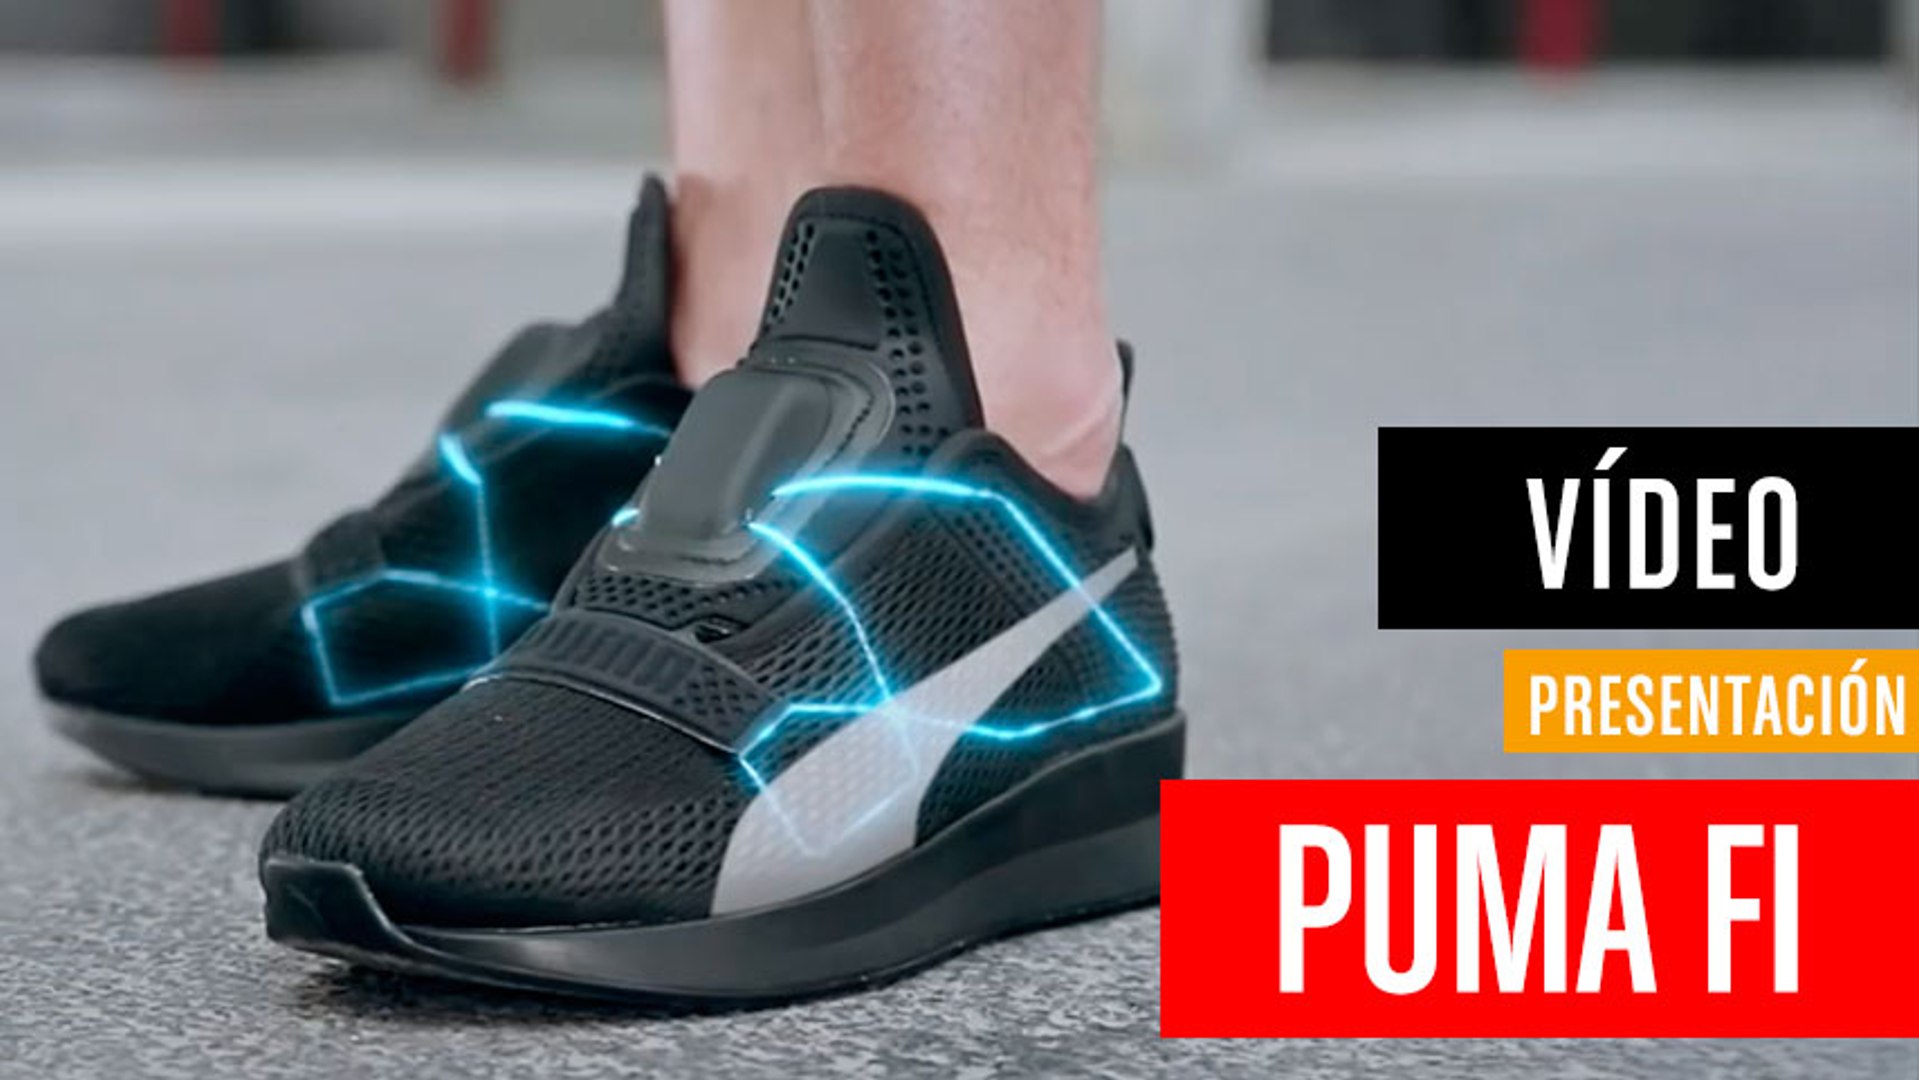 Puma planta a sus propias zapatillas - Vídeo Dailymotion